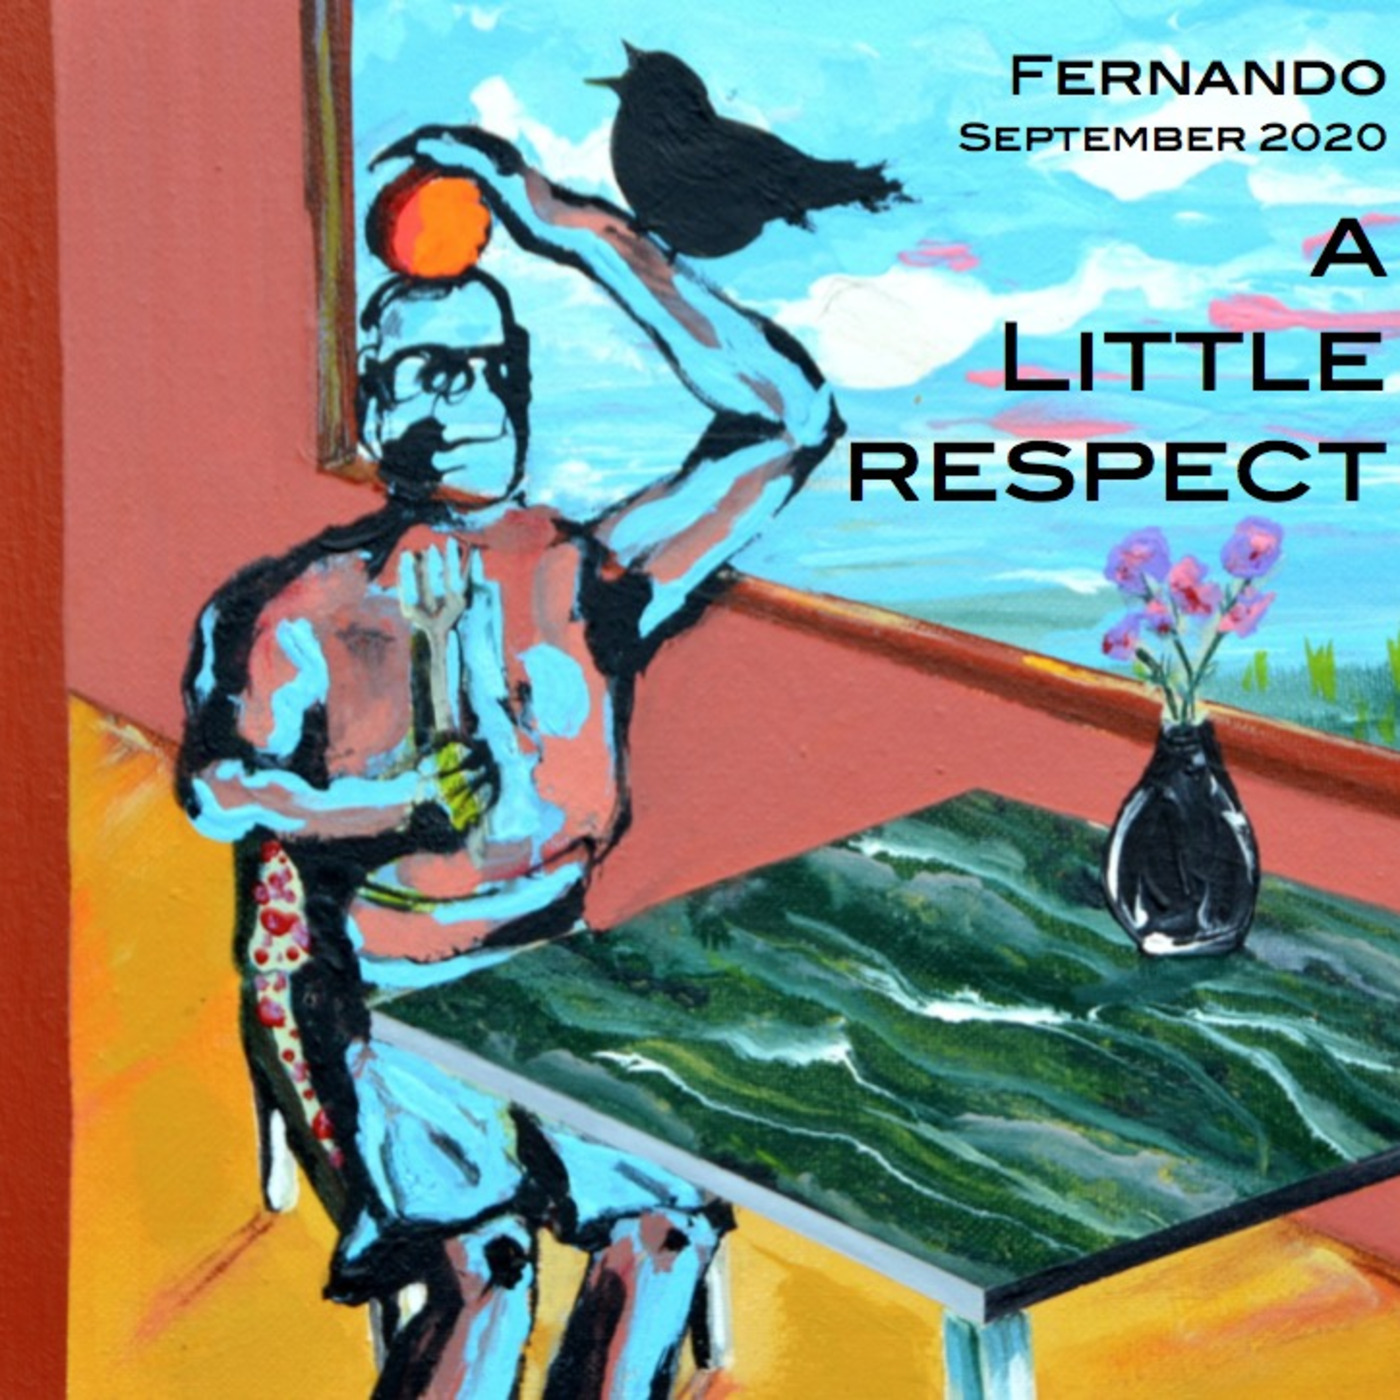 Fernando - A Litttle Respect - September 2020